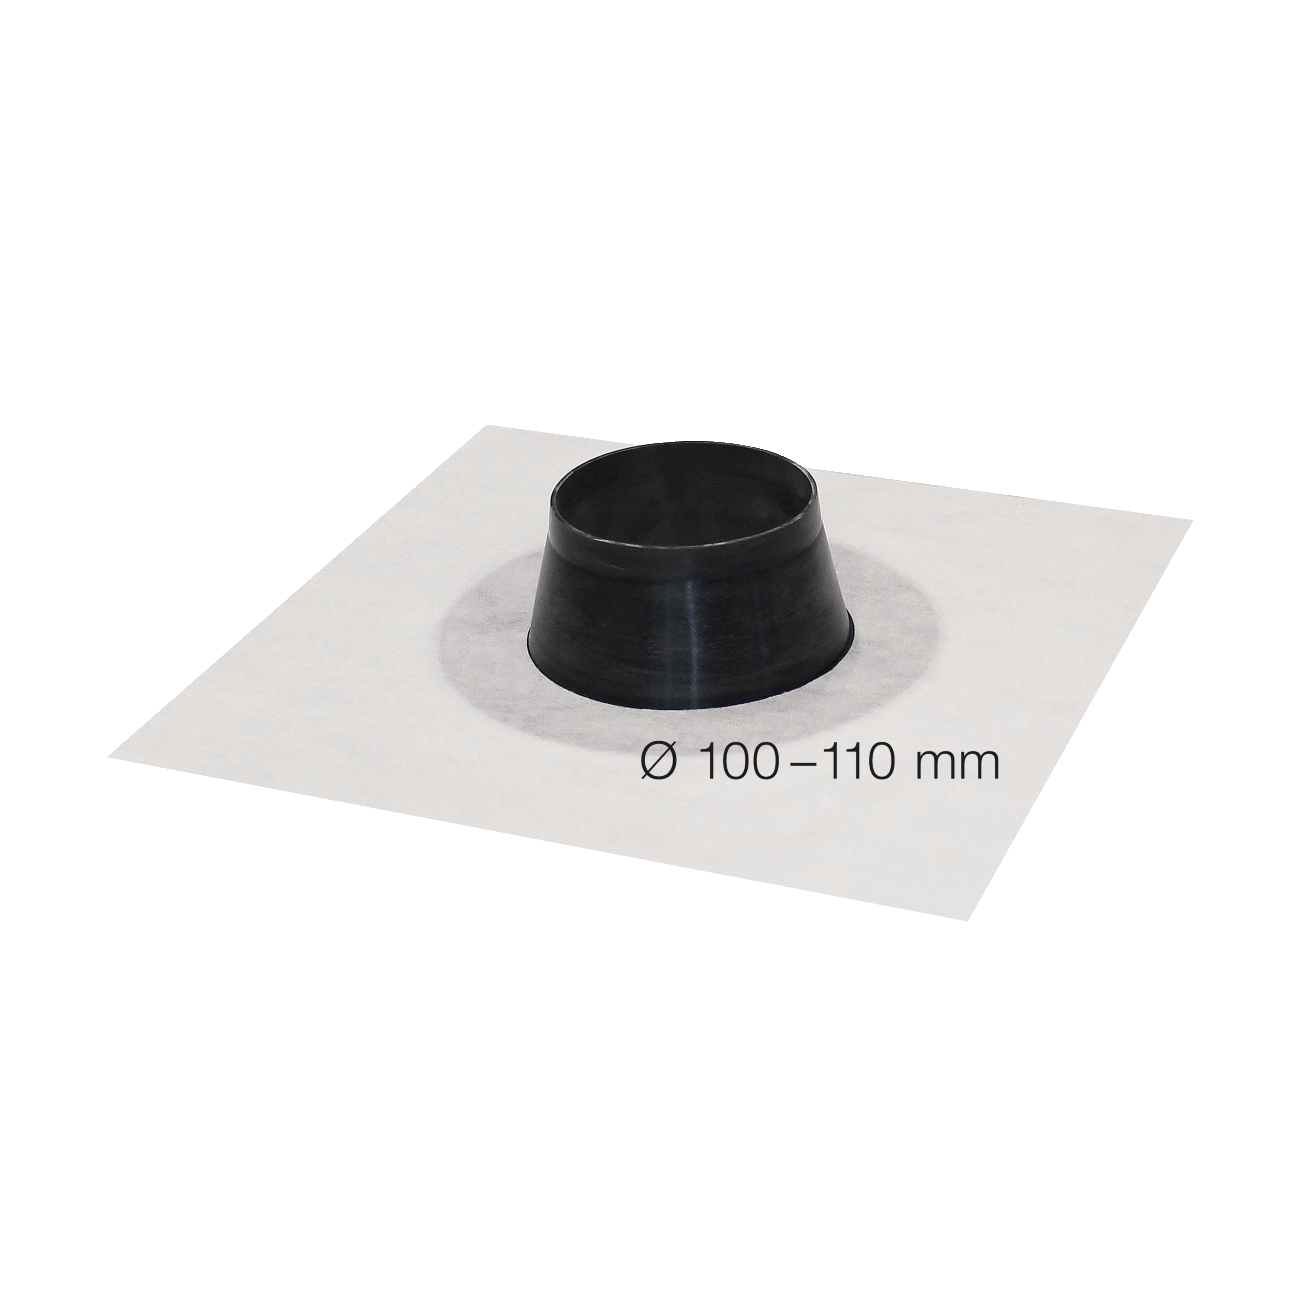 SIGA Fentrim mof wit diameter 100-110mmm, voor leidingdoorvoer